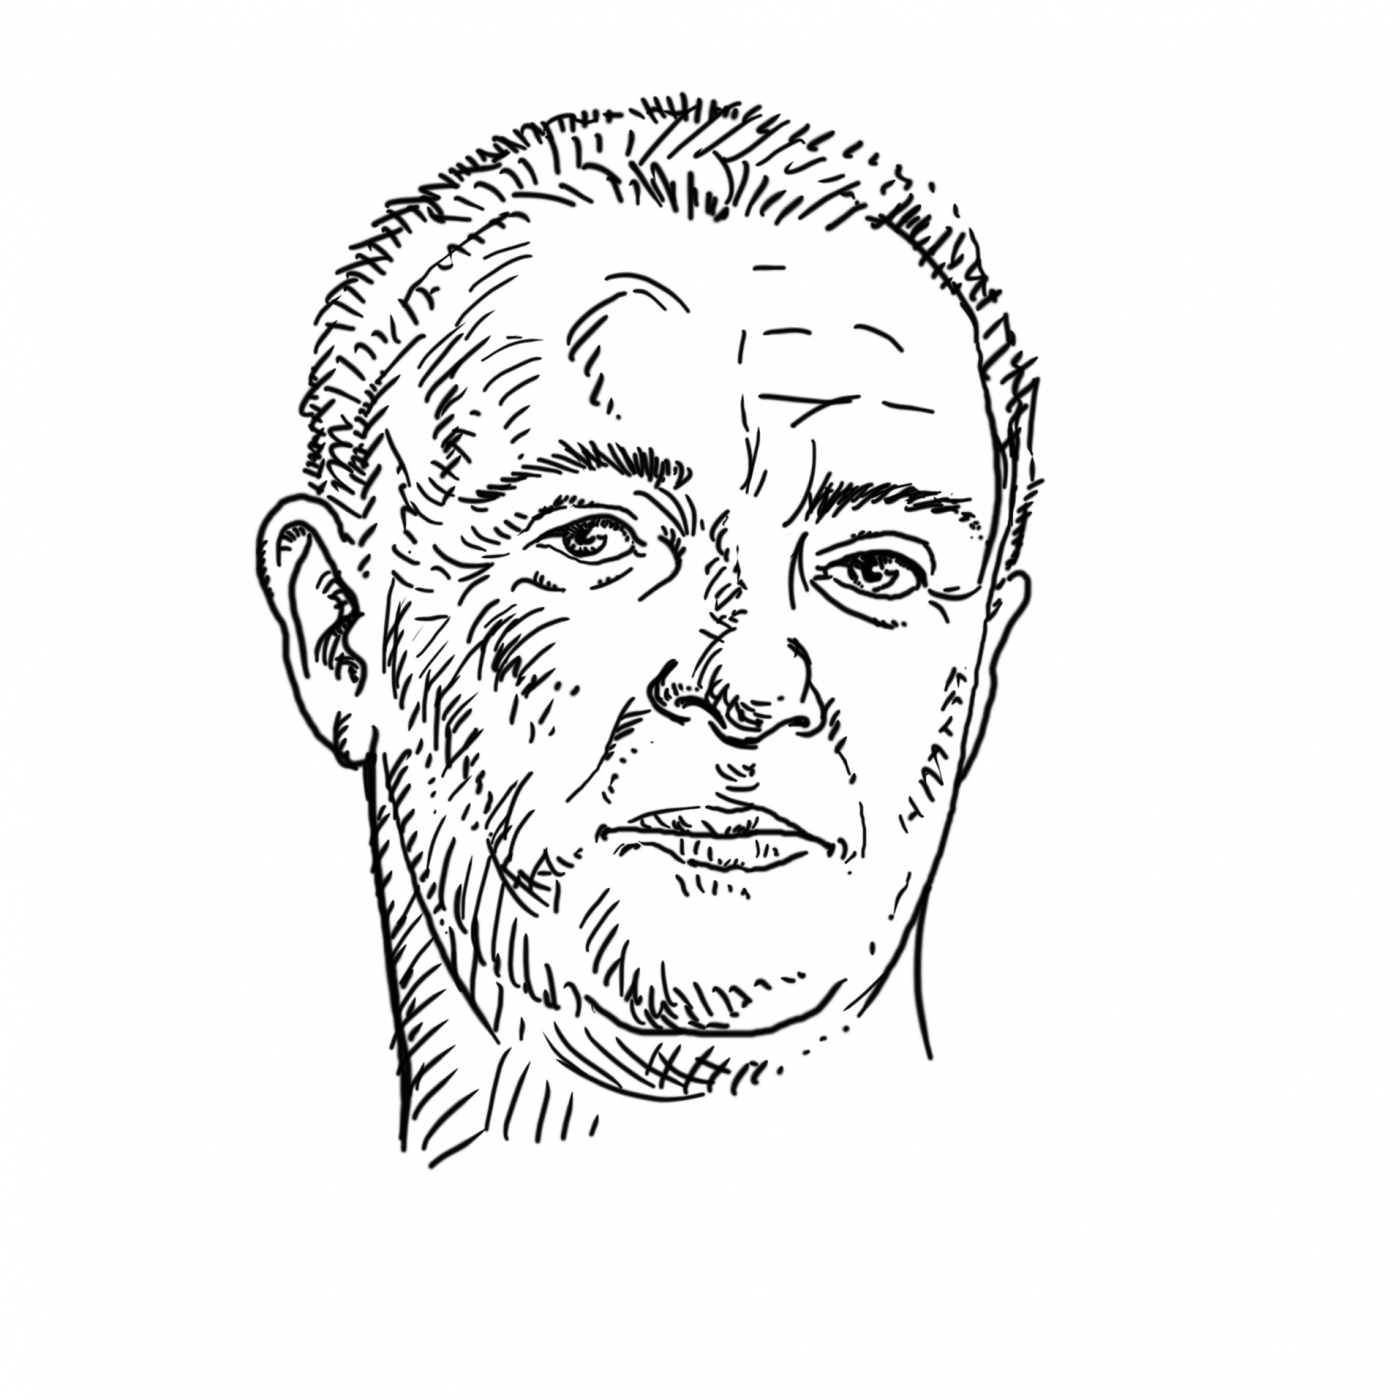 Narysowana tuszem twarz, autoportret - czarne konkury na białej kartce papieru